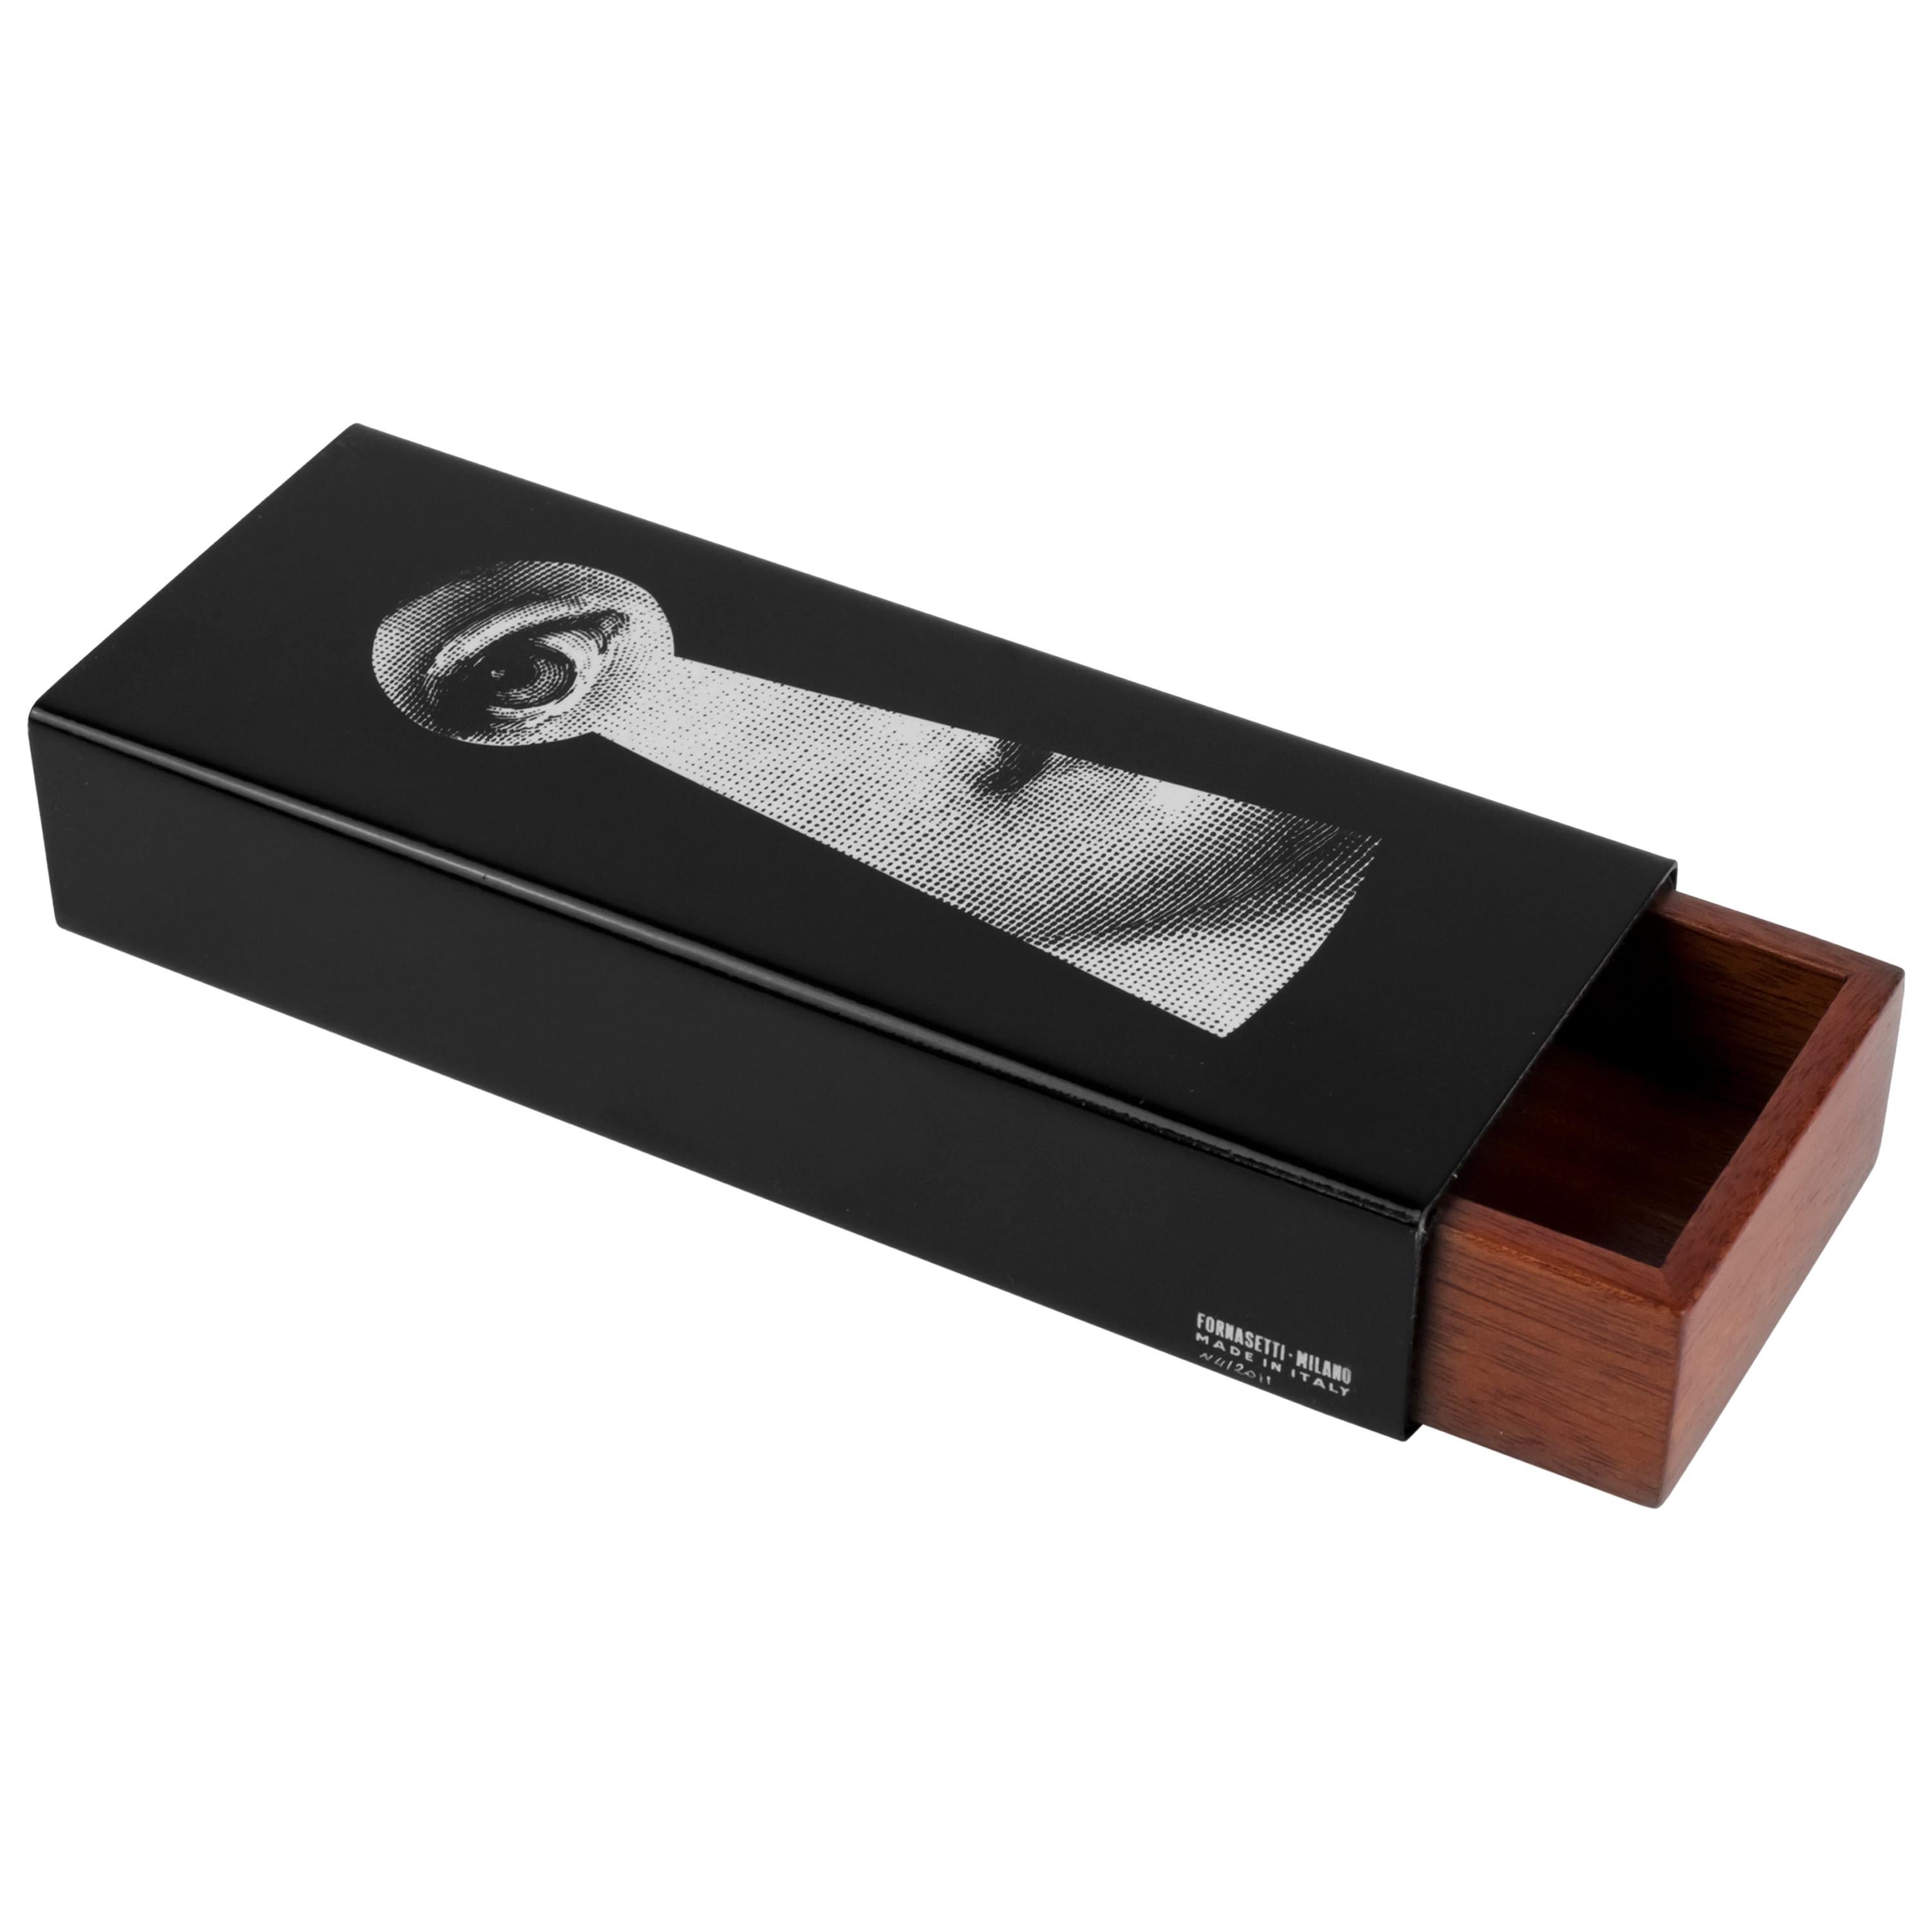 Fornasetti Wooden and Metal Box Serratura Black/White